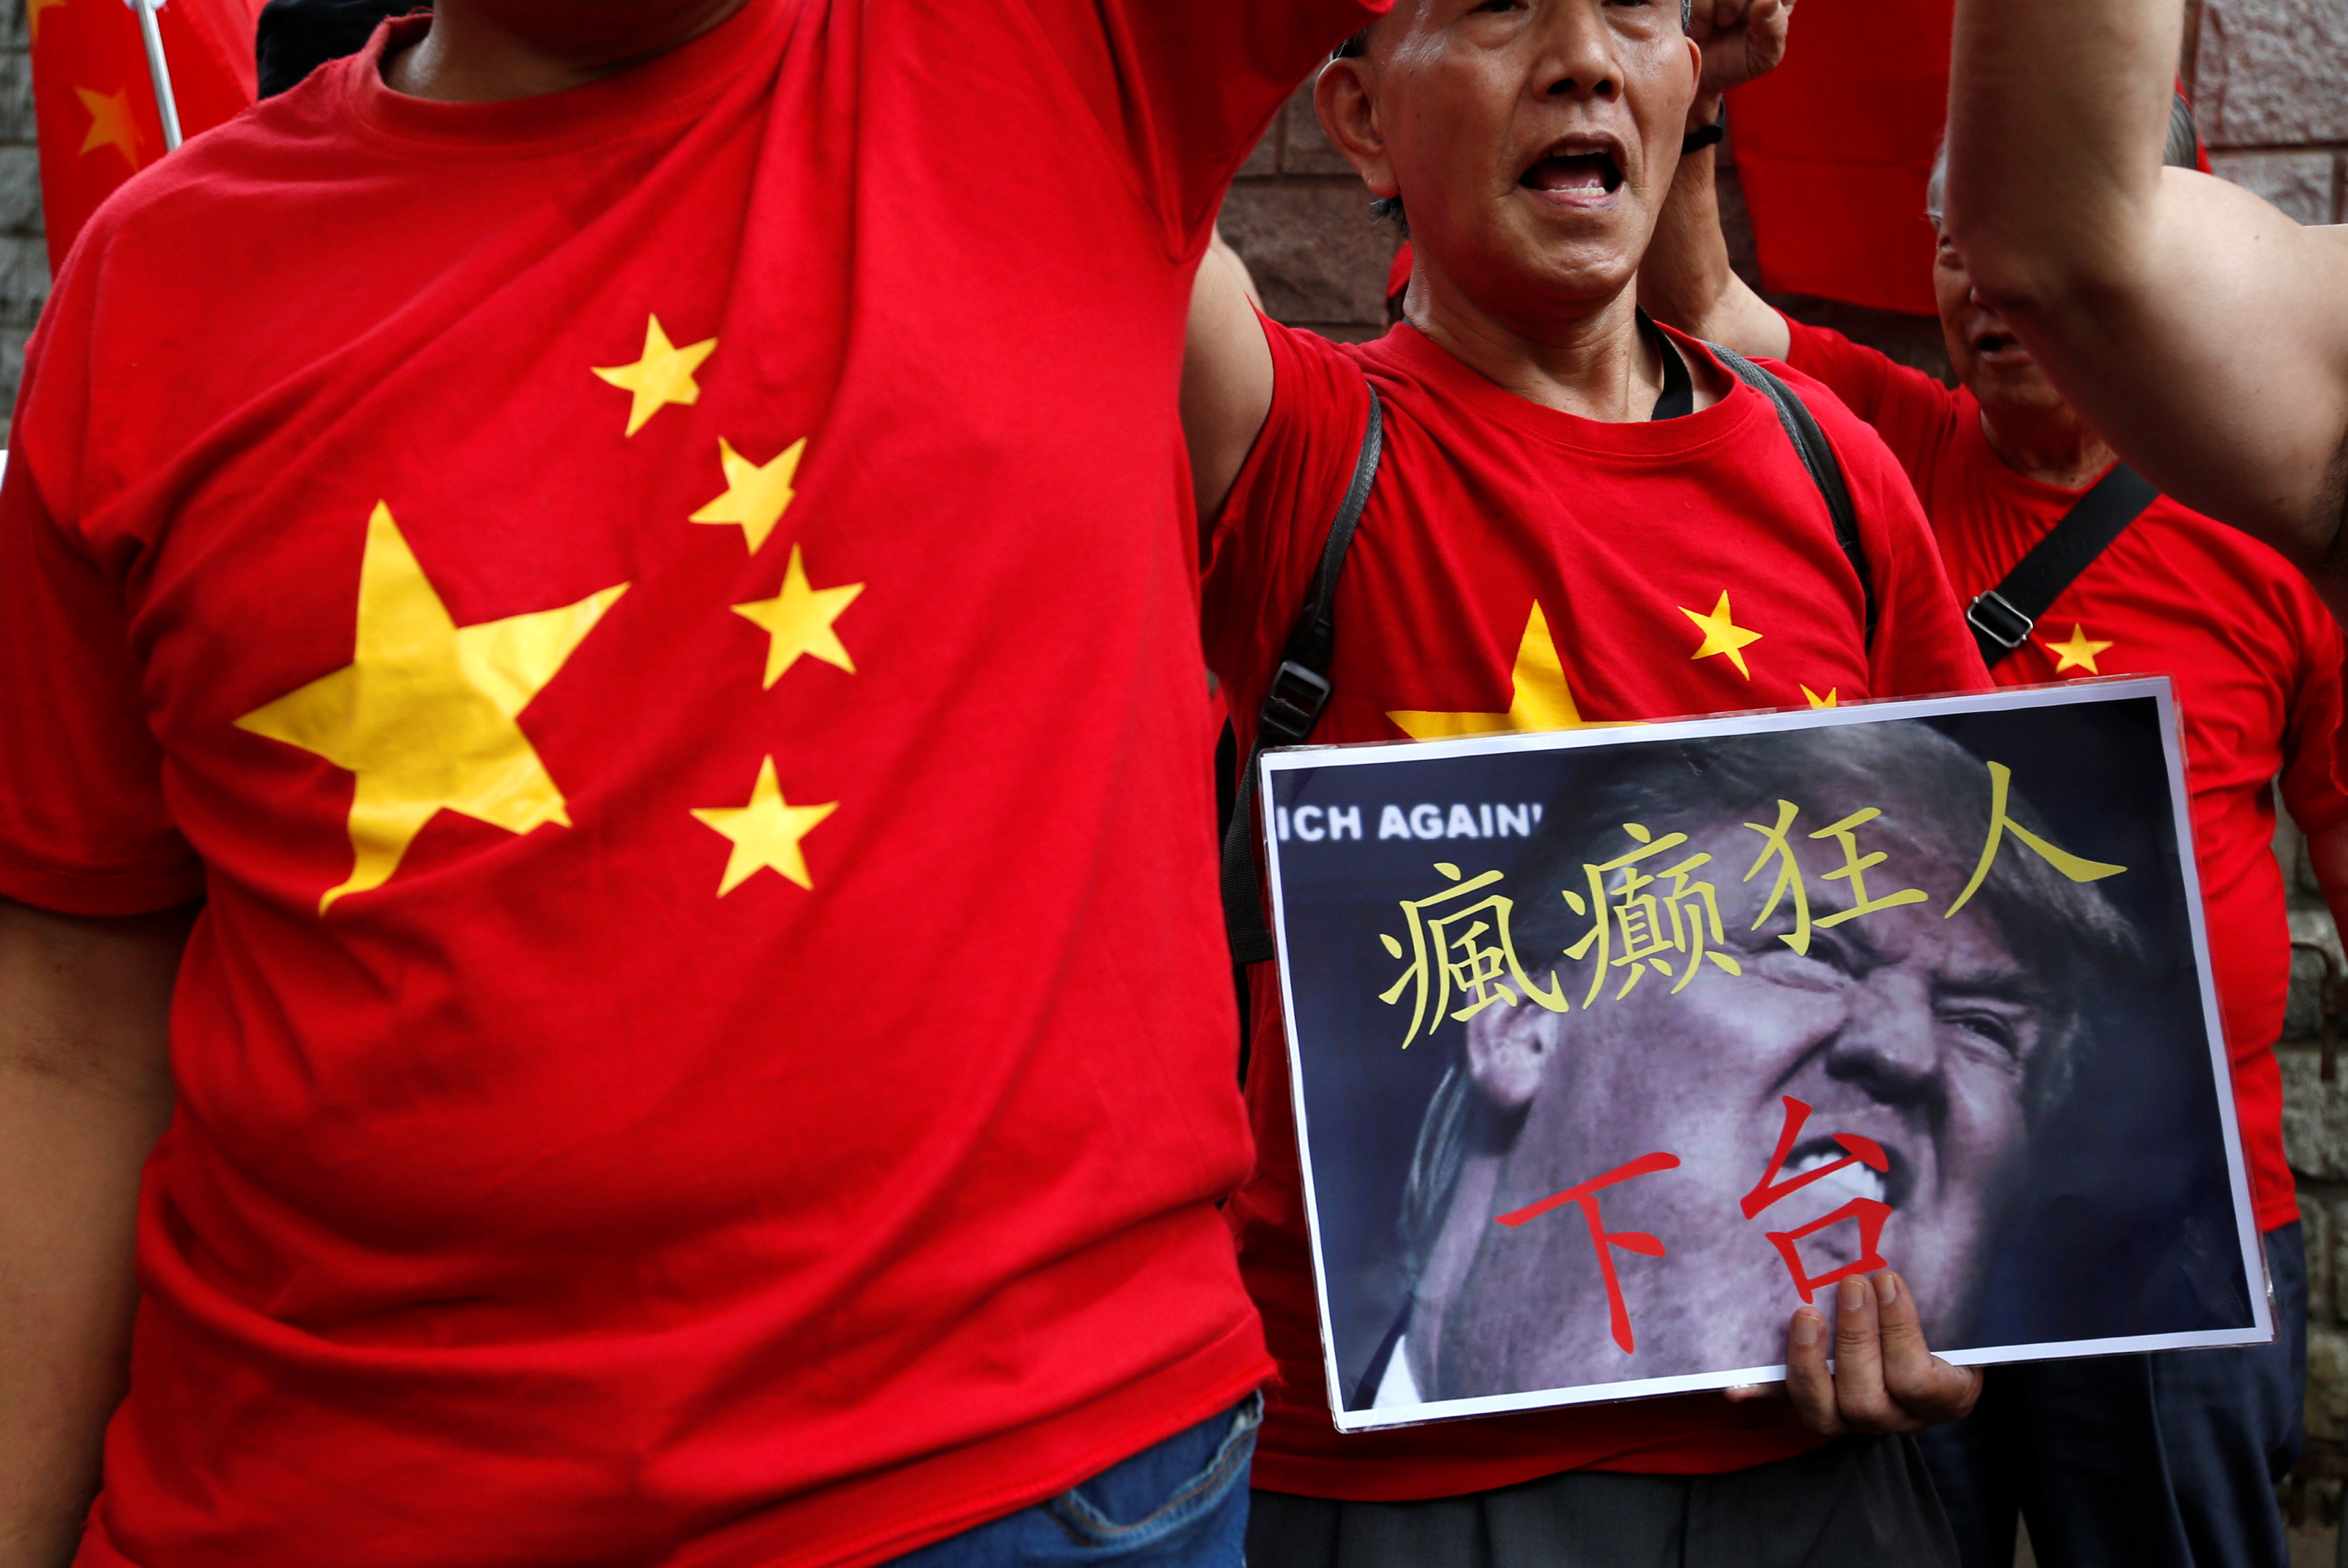 متظاهرون يرتدون ملابس بأعلام الصين يحتجون ضد سياسات ترامب